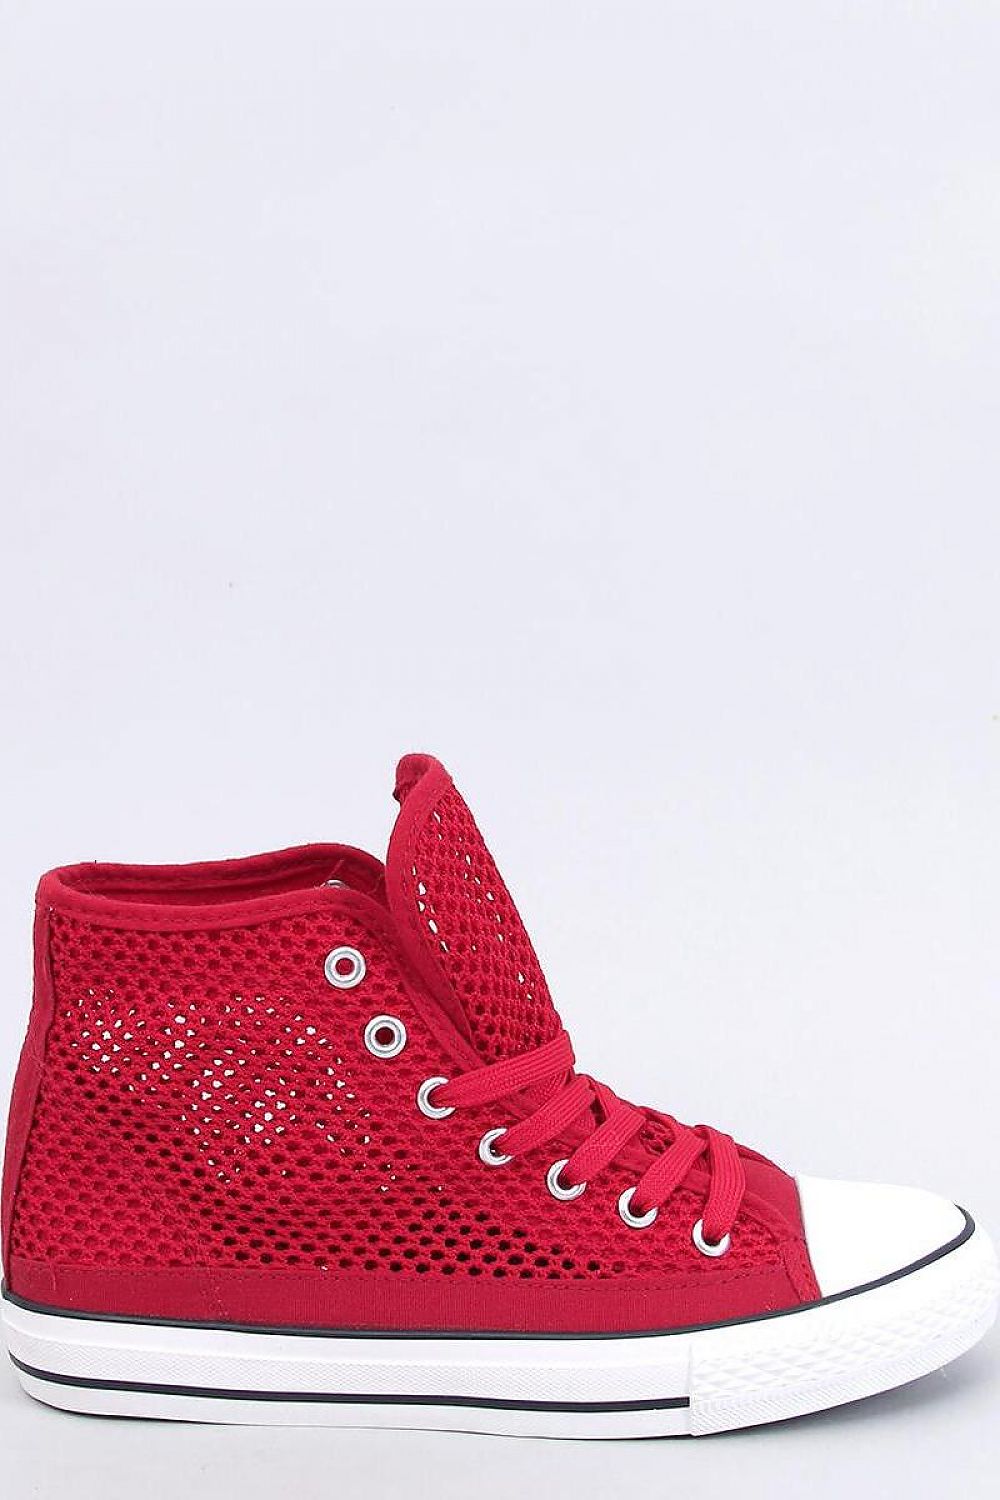 TEEK - Red Mesh Sneakers SHOES TEEK MH 6  